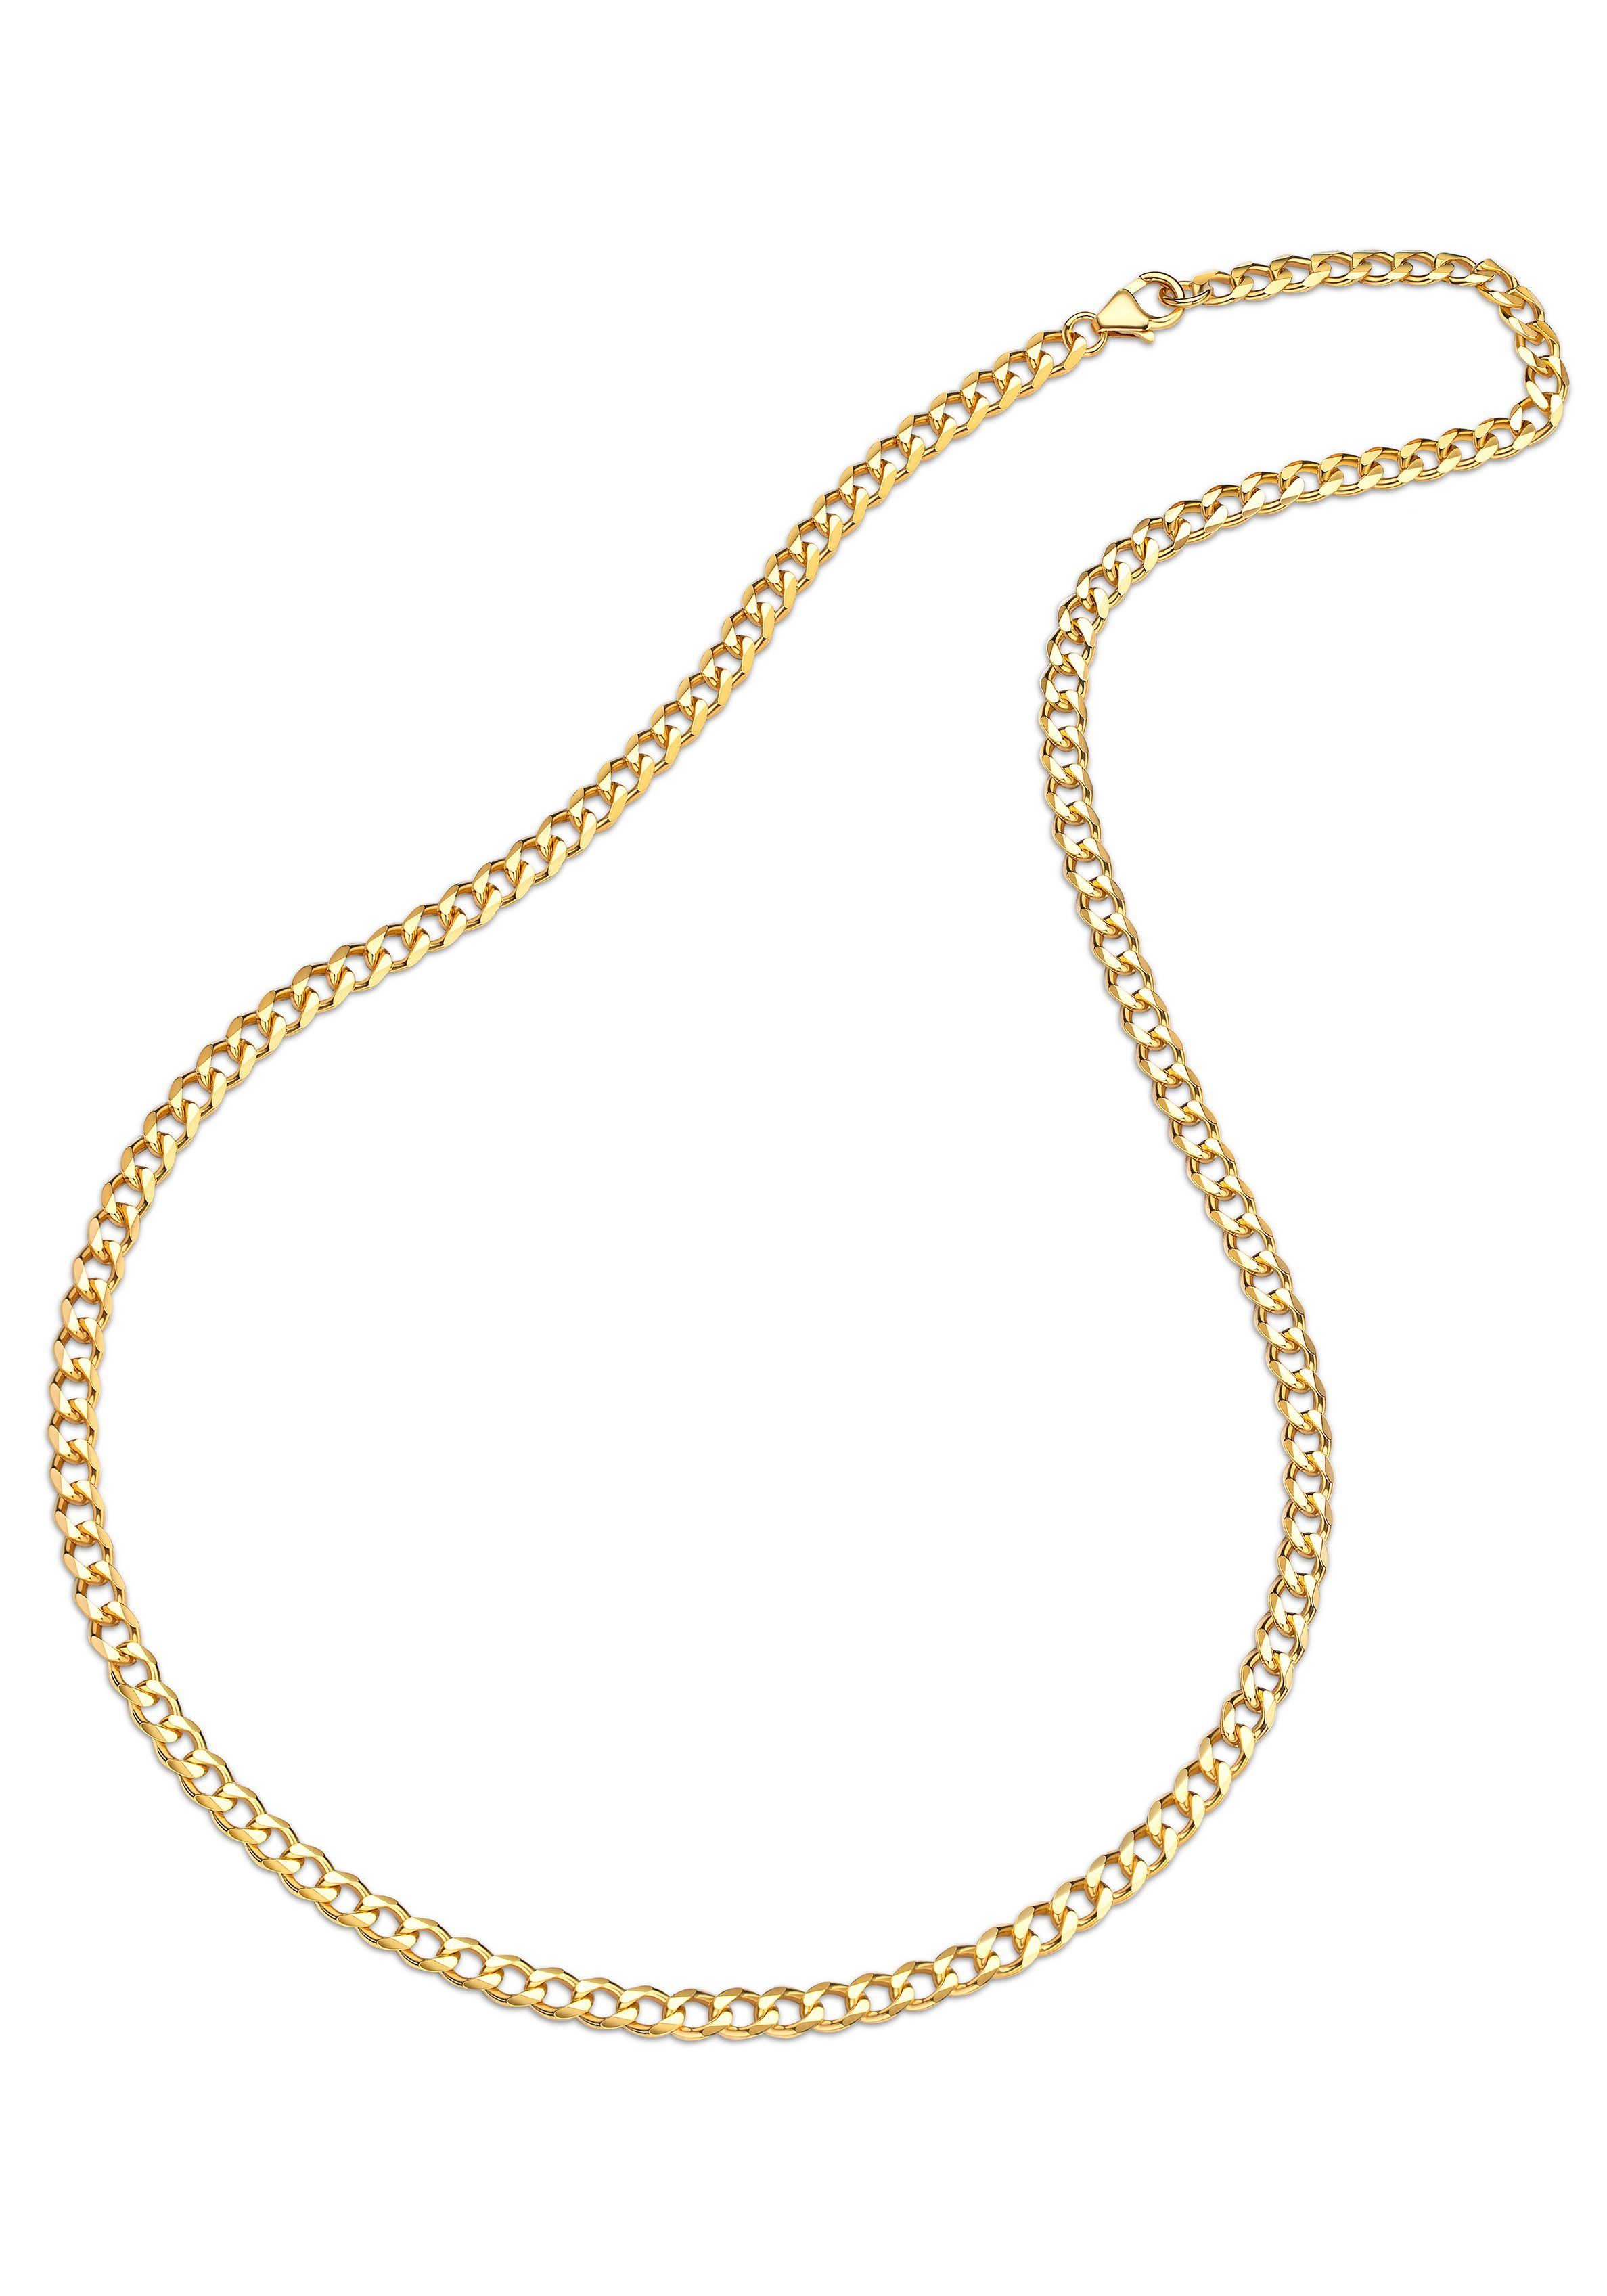 Firetti Goldkette Schmuck Geschenk Gold 333 Halskette Panzerkette, zu Hoodie, Kleid, Shirt, Jeans, Sneaker! Anlass Geburtstag Weihnachten